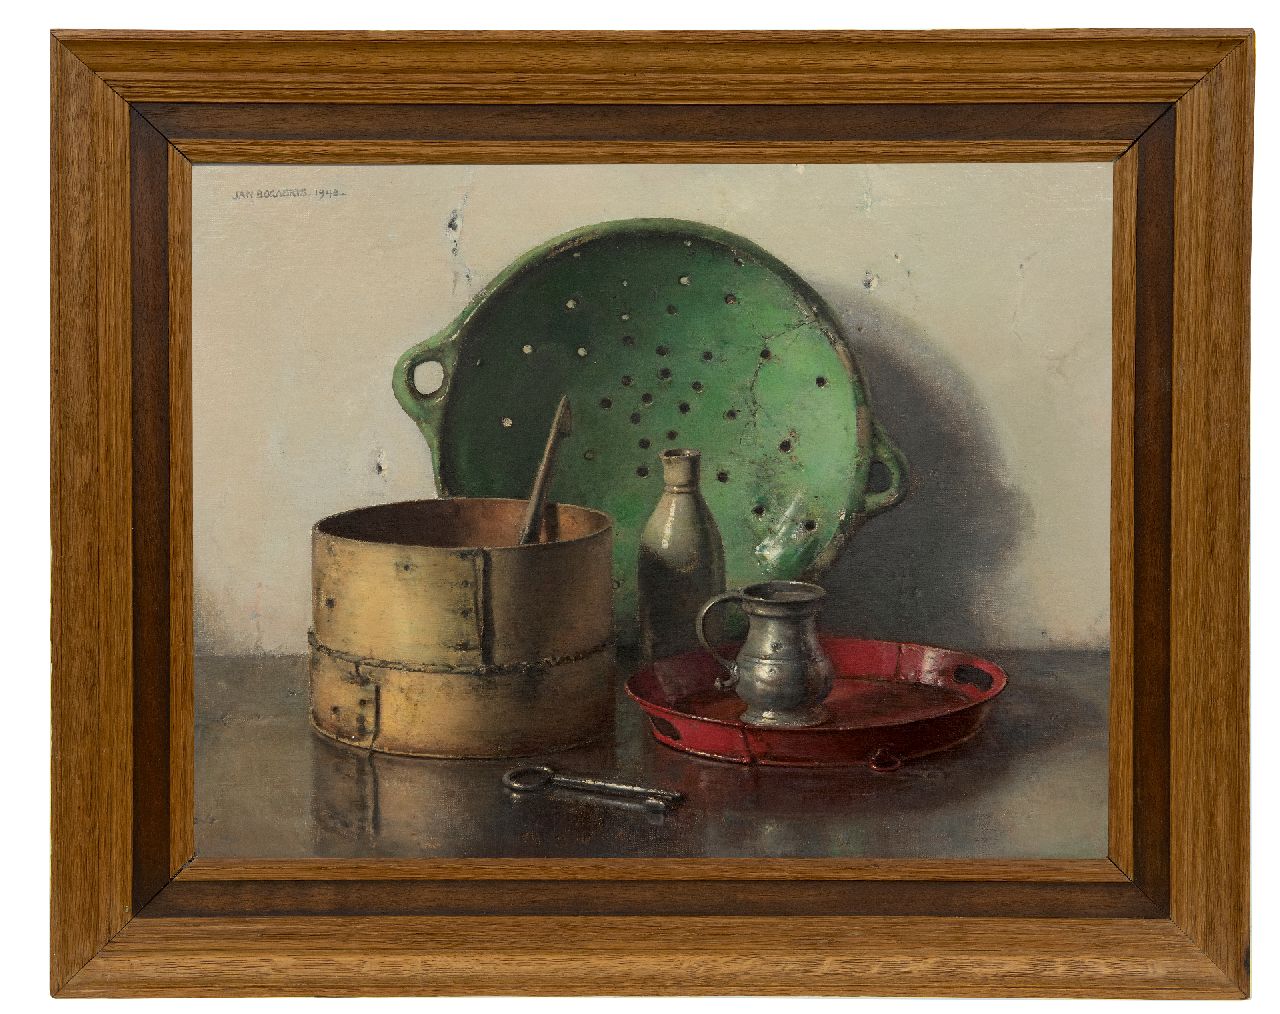 Bogaerts J.J.M.  | Johannes Jacobus Maria 'Jan' Bogaerts, Stilleben mit grünem Sieb, Öl auf Leinwand 50,2 x 66,1 cm, Unterzeichnet o.l. und datiert 1948